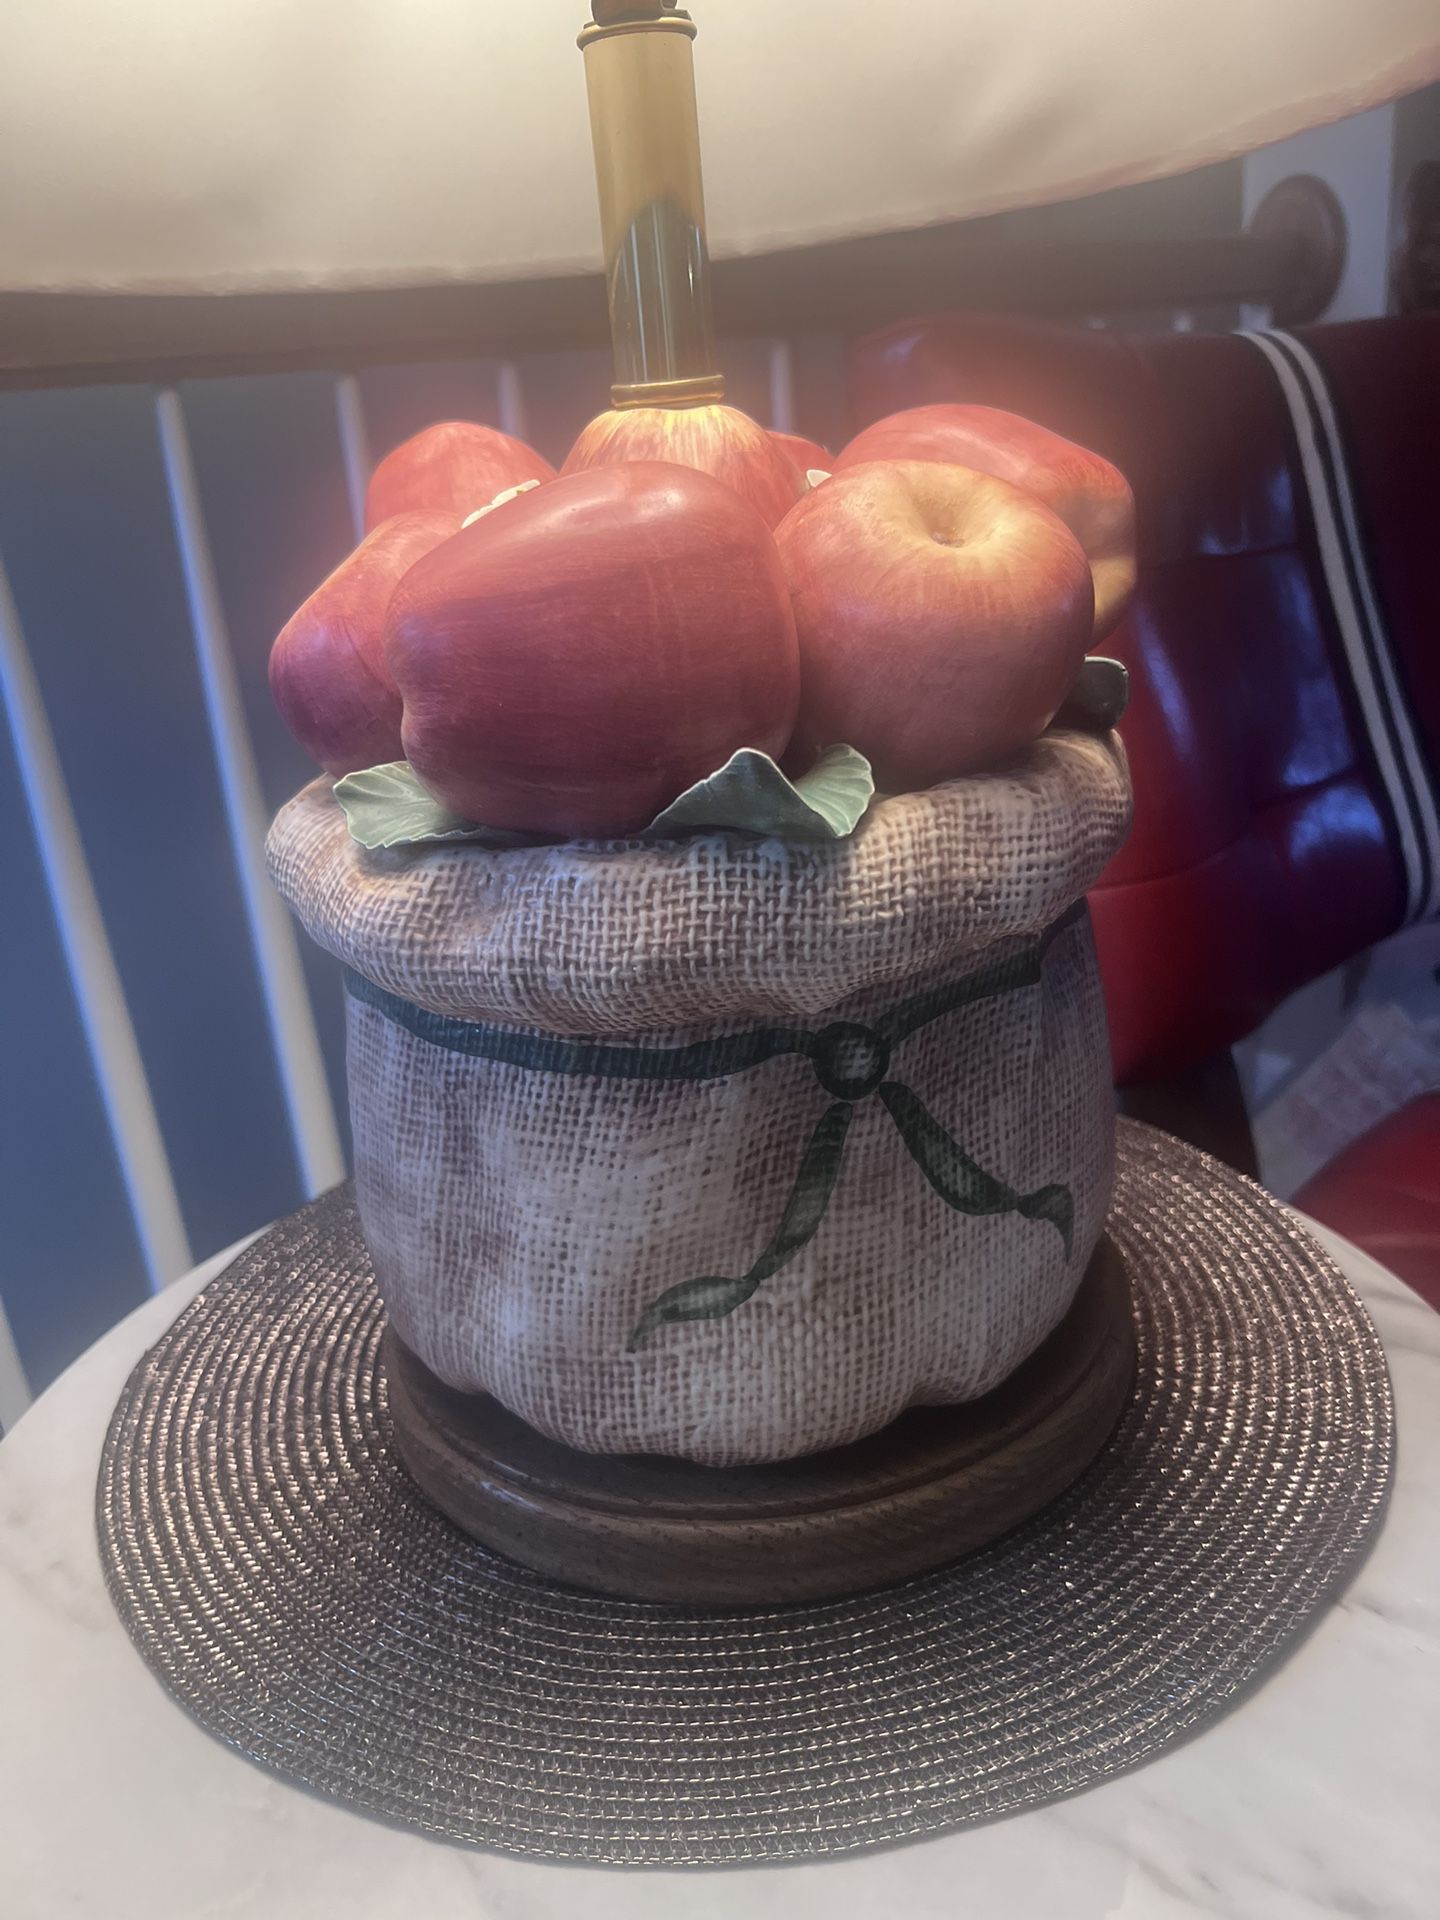 Gumps Porcelain Apples in Burlap Bag Sack Lamp Italian Pottery